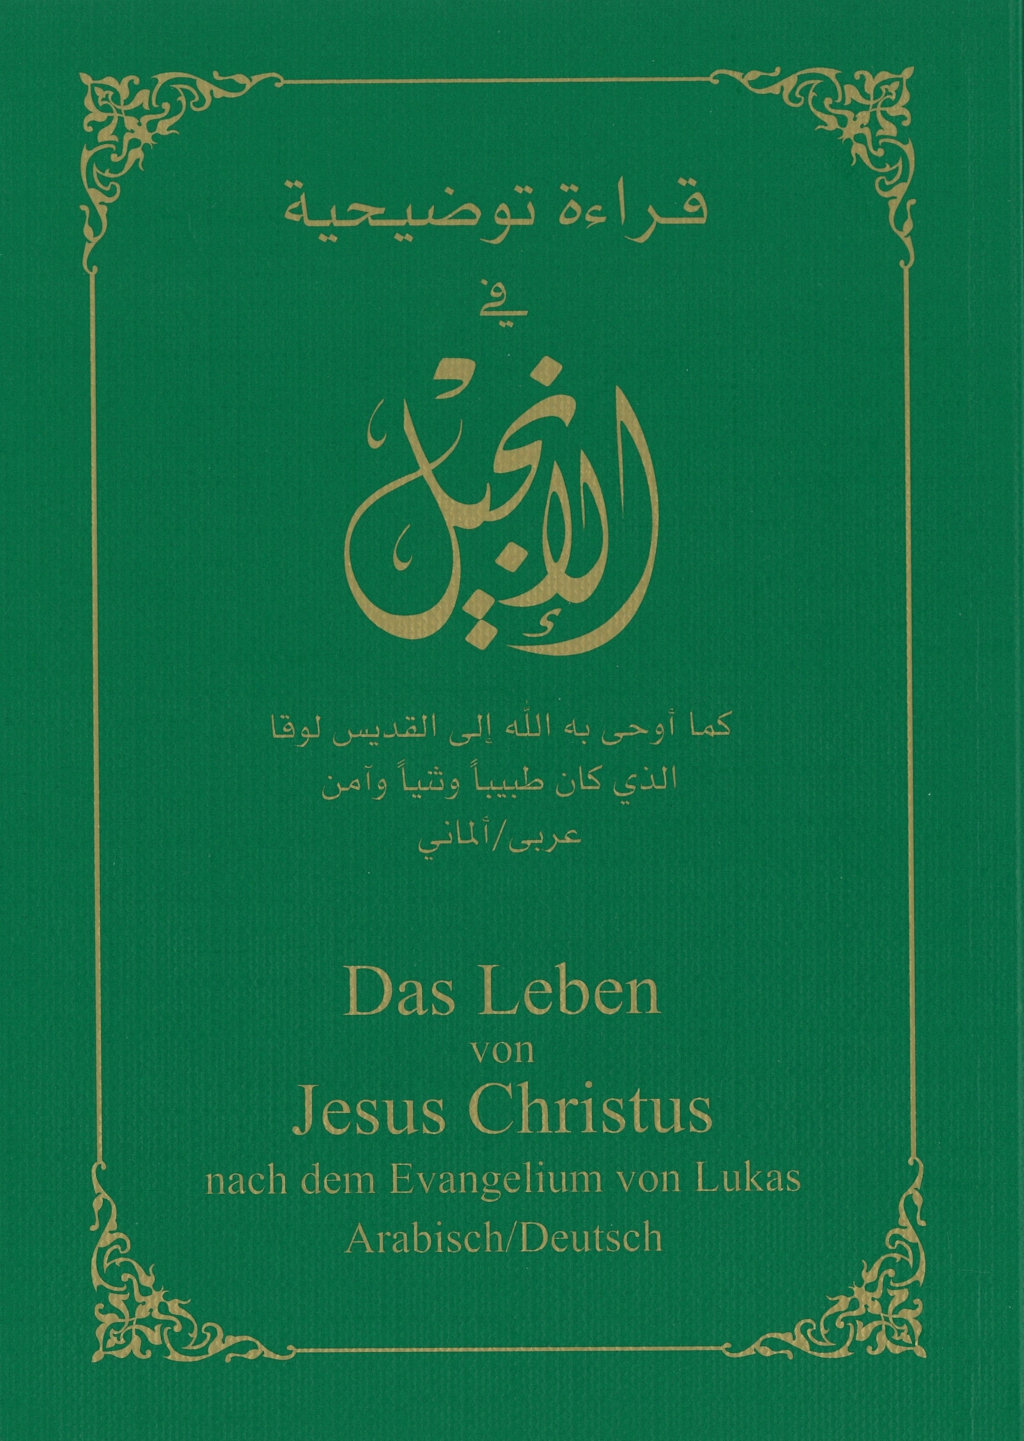 Arabisch-Deutsch Evangelium nach Lukas